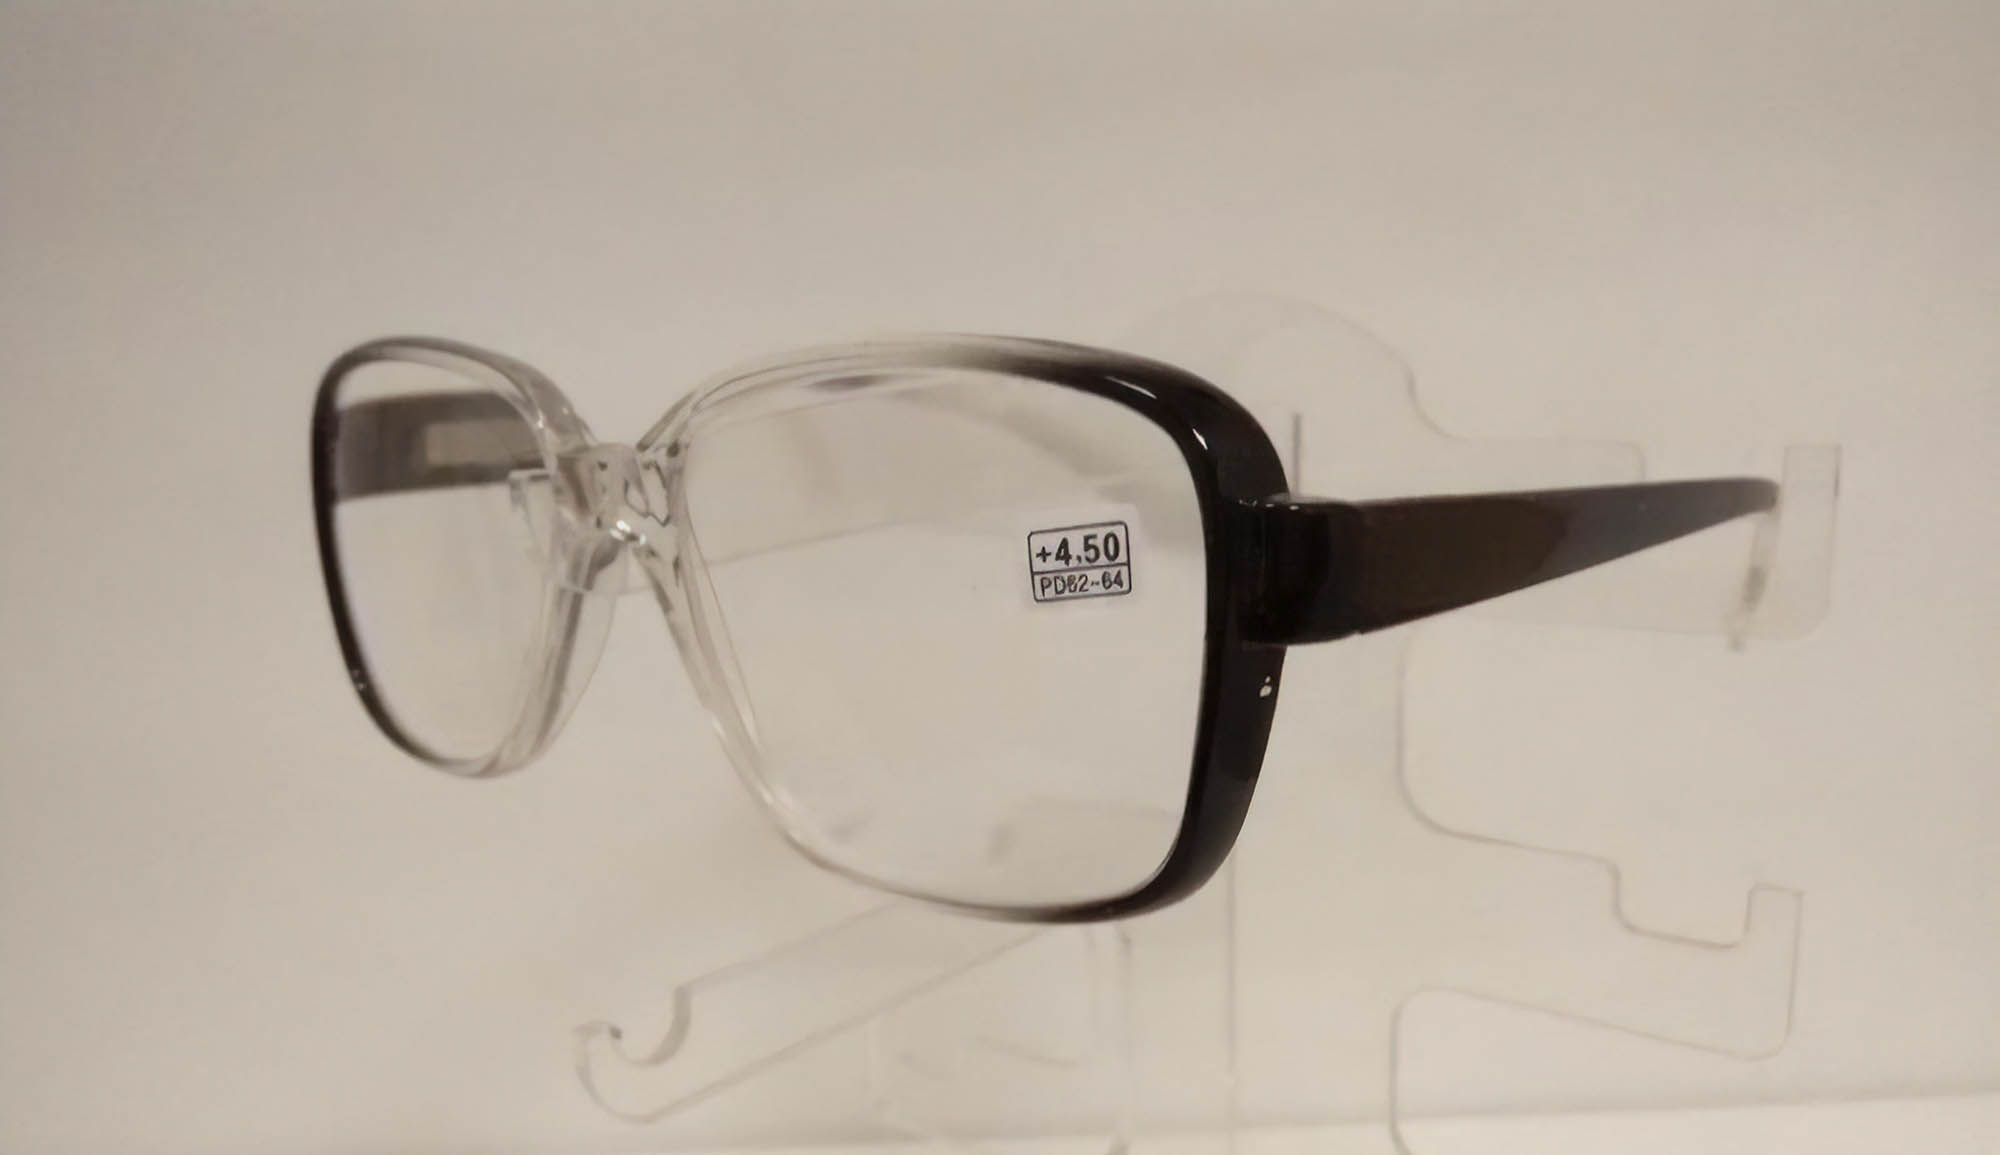 Готовые мужские очки Boshi 868 стоят 200 ₽. Подойдут на межзрачковое расстояние 62—64, диоптрии: от –10,00 до +10,00